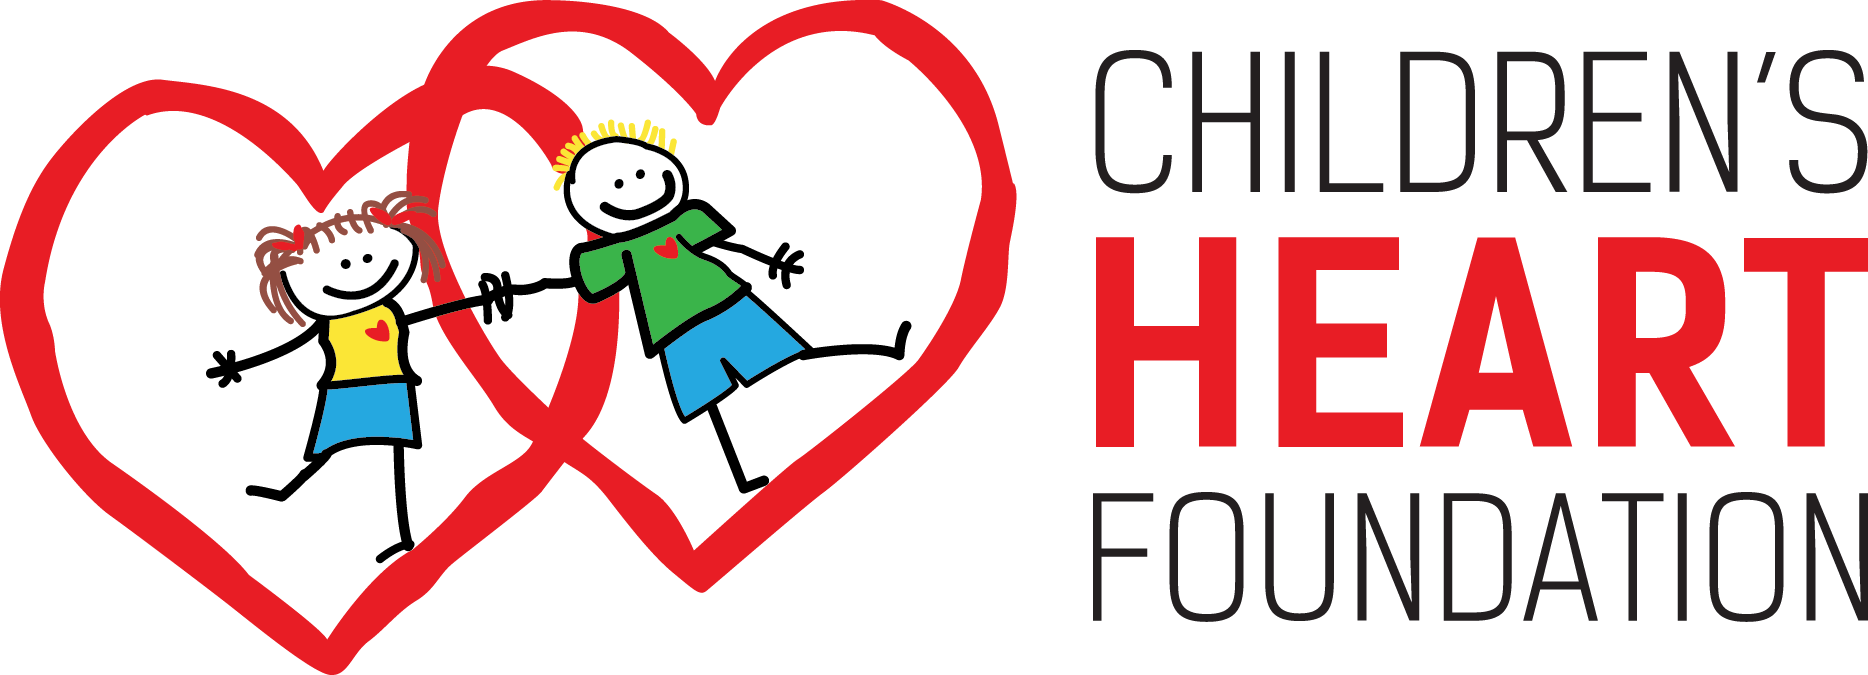 Picture - Children's Heart Foundation Las Vegas (1868x675)